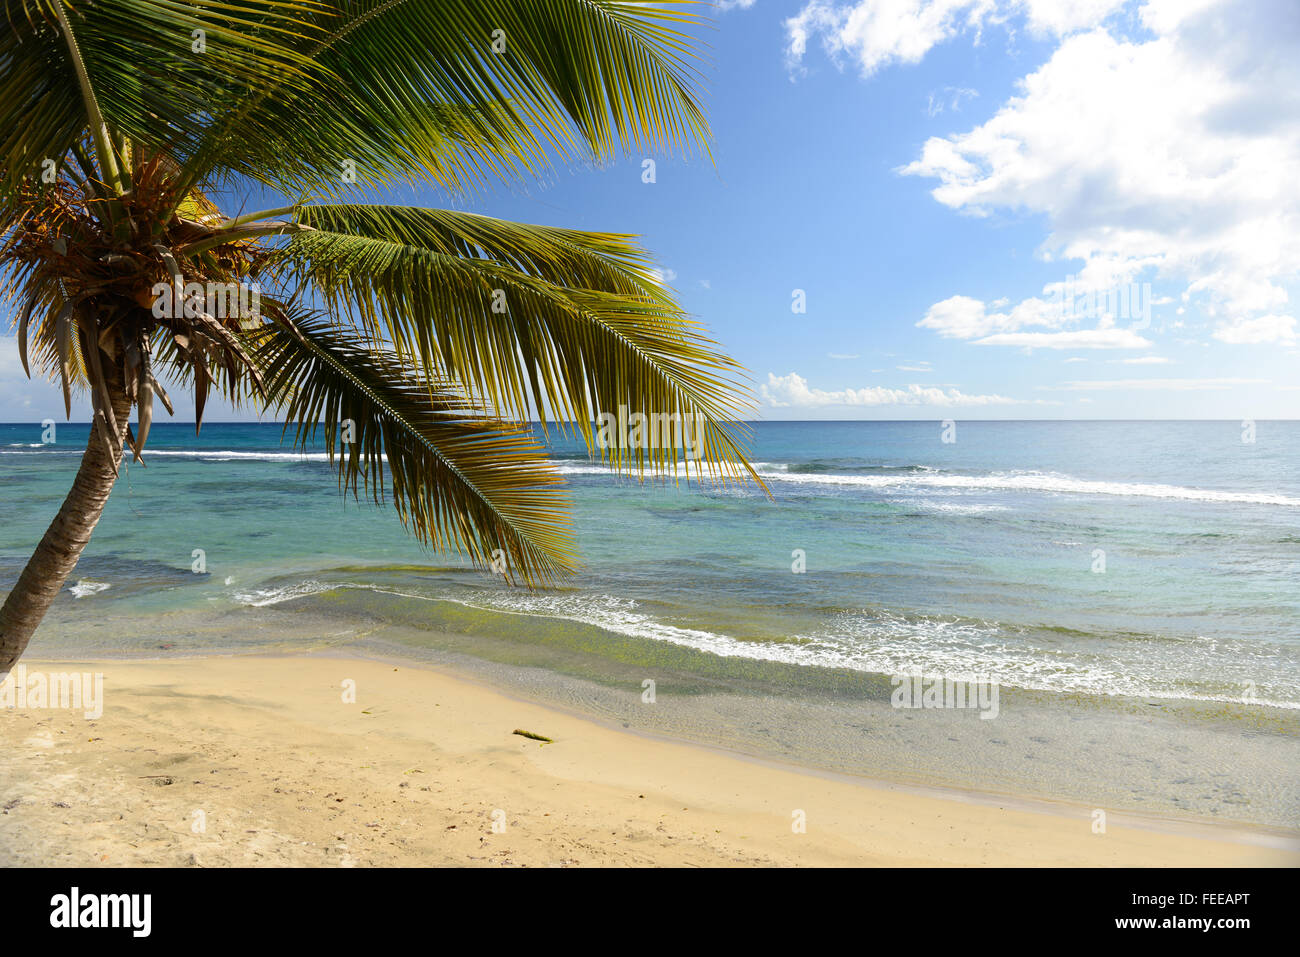 Scena tropicale di acque chiare e Palm Tree sulla spiaggia. Patillas, Puerto Rico. Isola dei caraibi. Territorio statunitense. Foto Stock